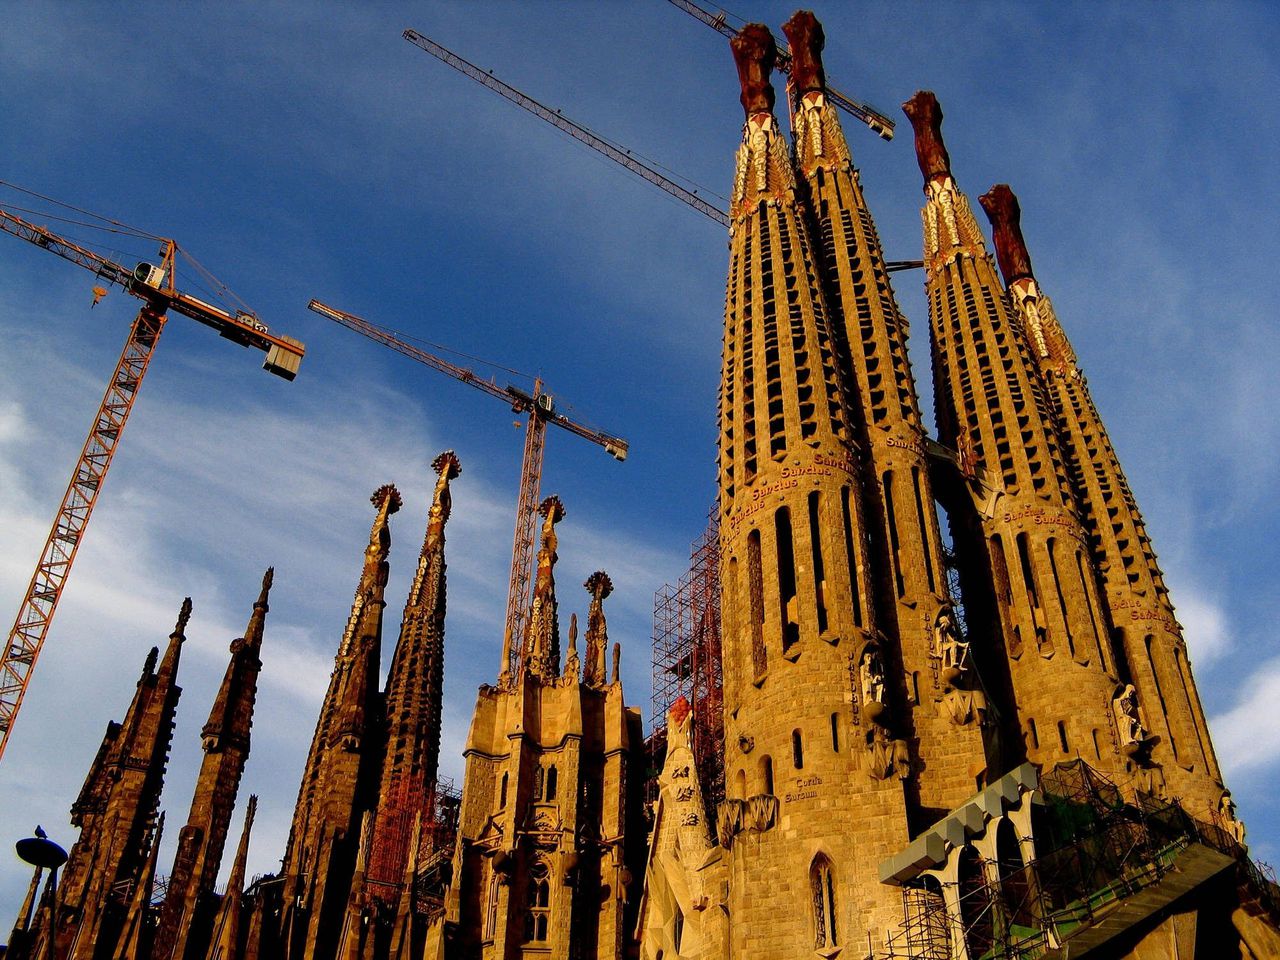 Grote projecten kan je best beginnen, al is de toekomst ongewis, vindt Heffernan. Zoals de kathedraal van Gaudi in Barcelona.